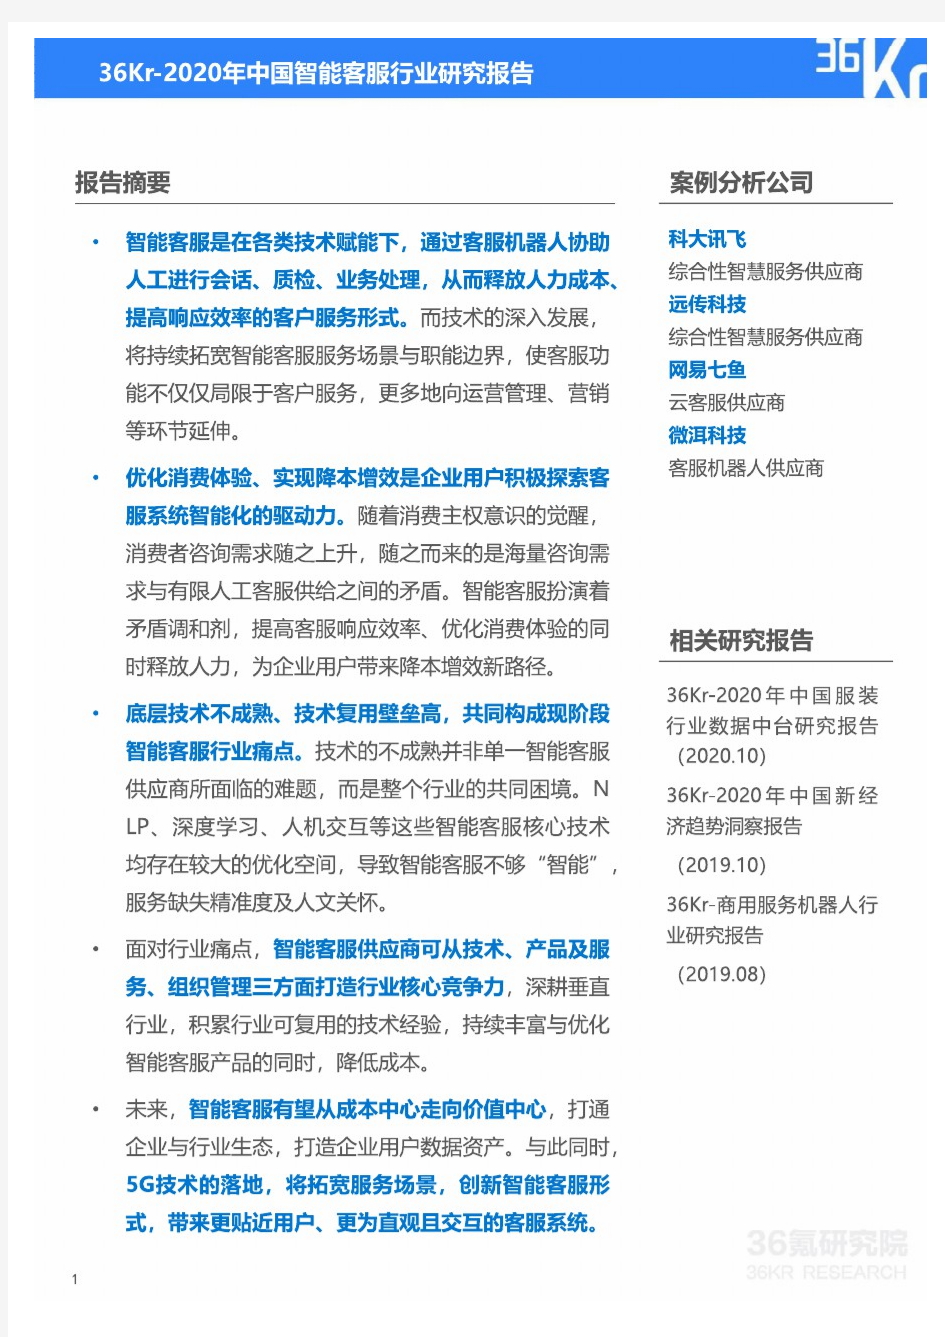 【精品报告】2020年中国智能客服行业研究报告-36Kr